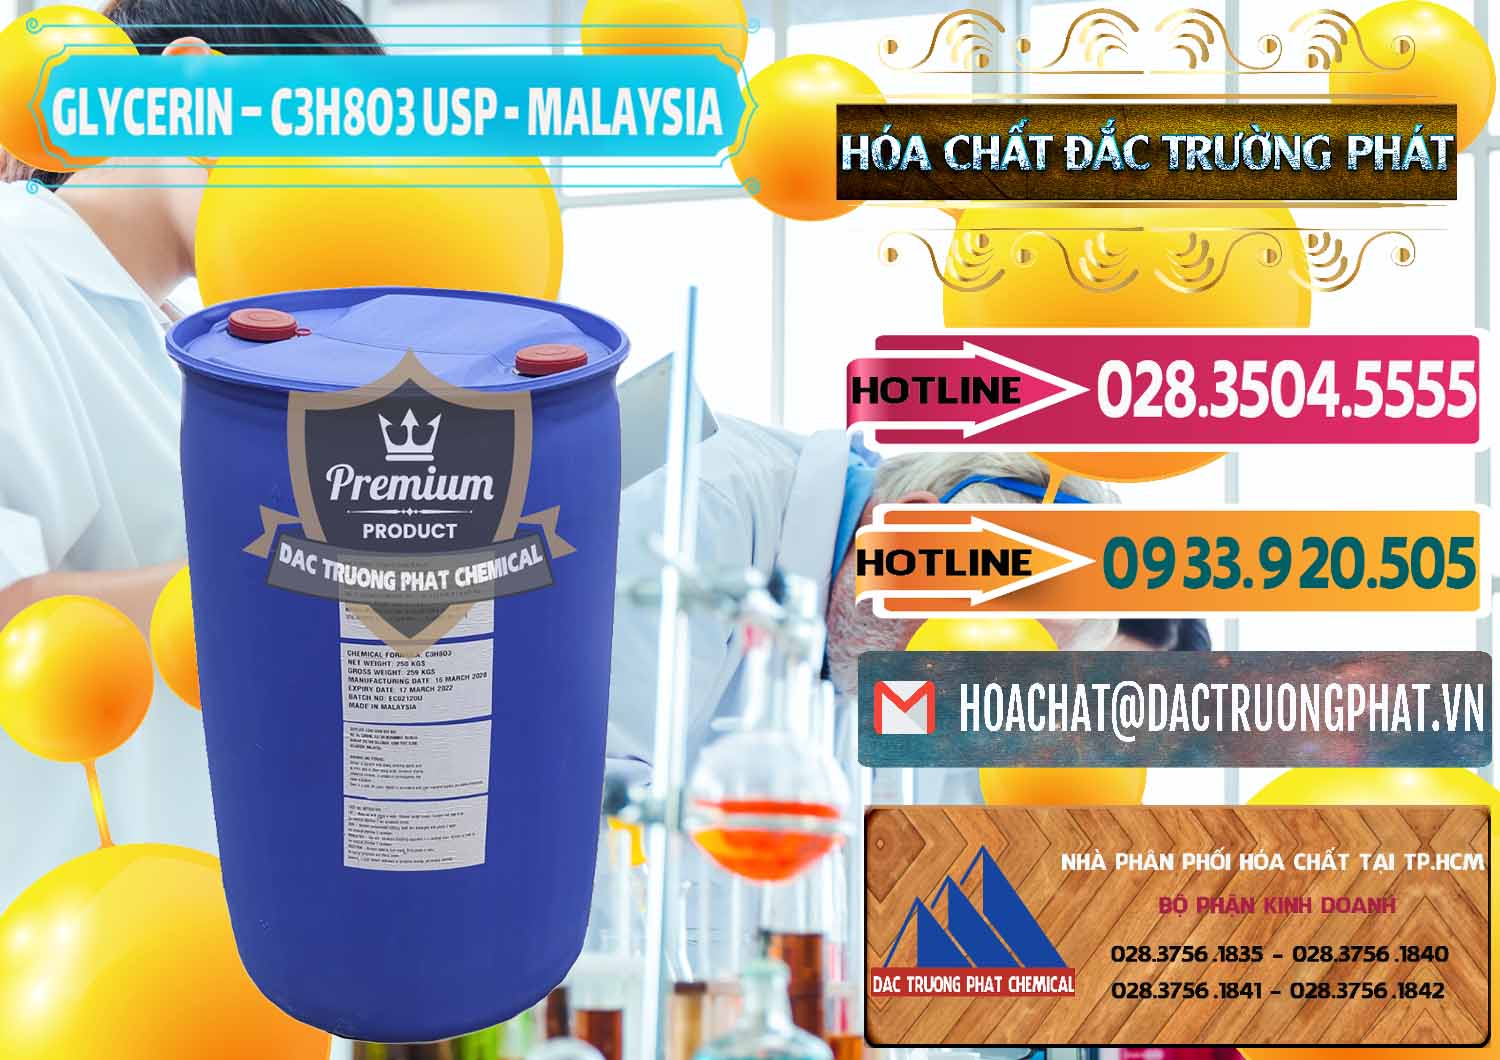 Nơi bán & phân phối Glycerin – C3H8O3 USP Malaysia - 0233 - Đơn vị cung cấp & bán hóa chất tại TP.HCM - dactruongphat.vn